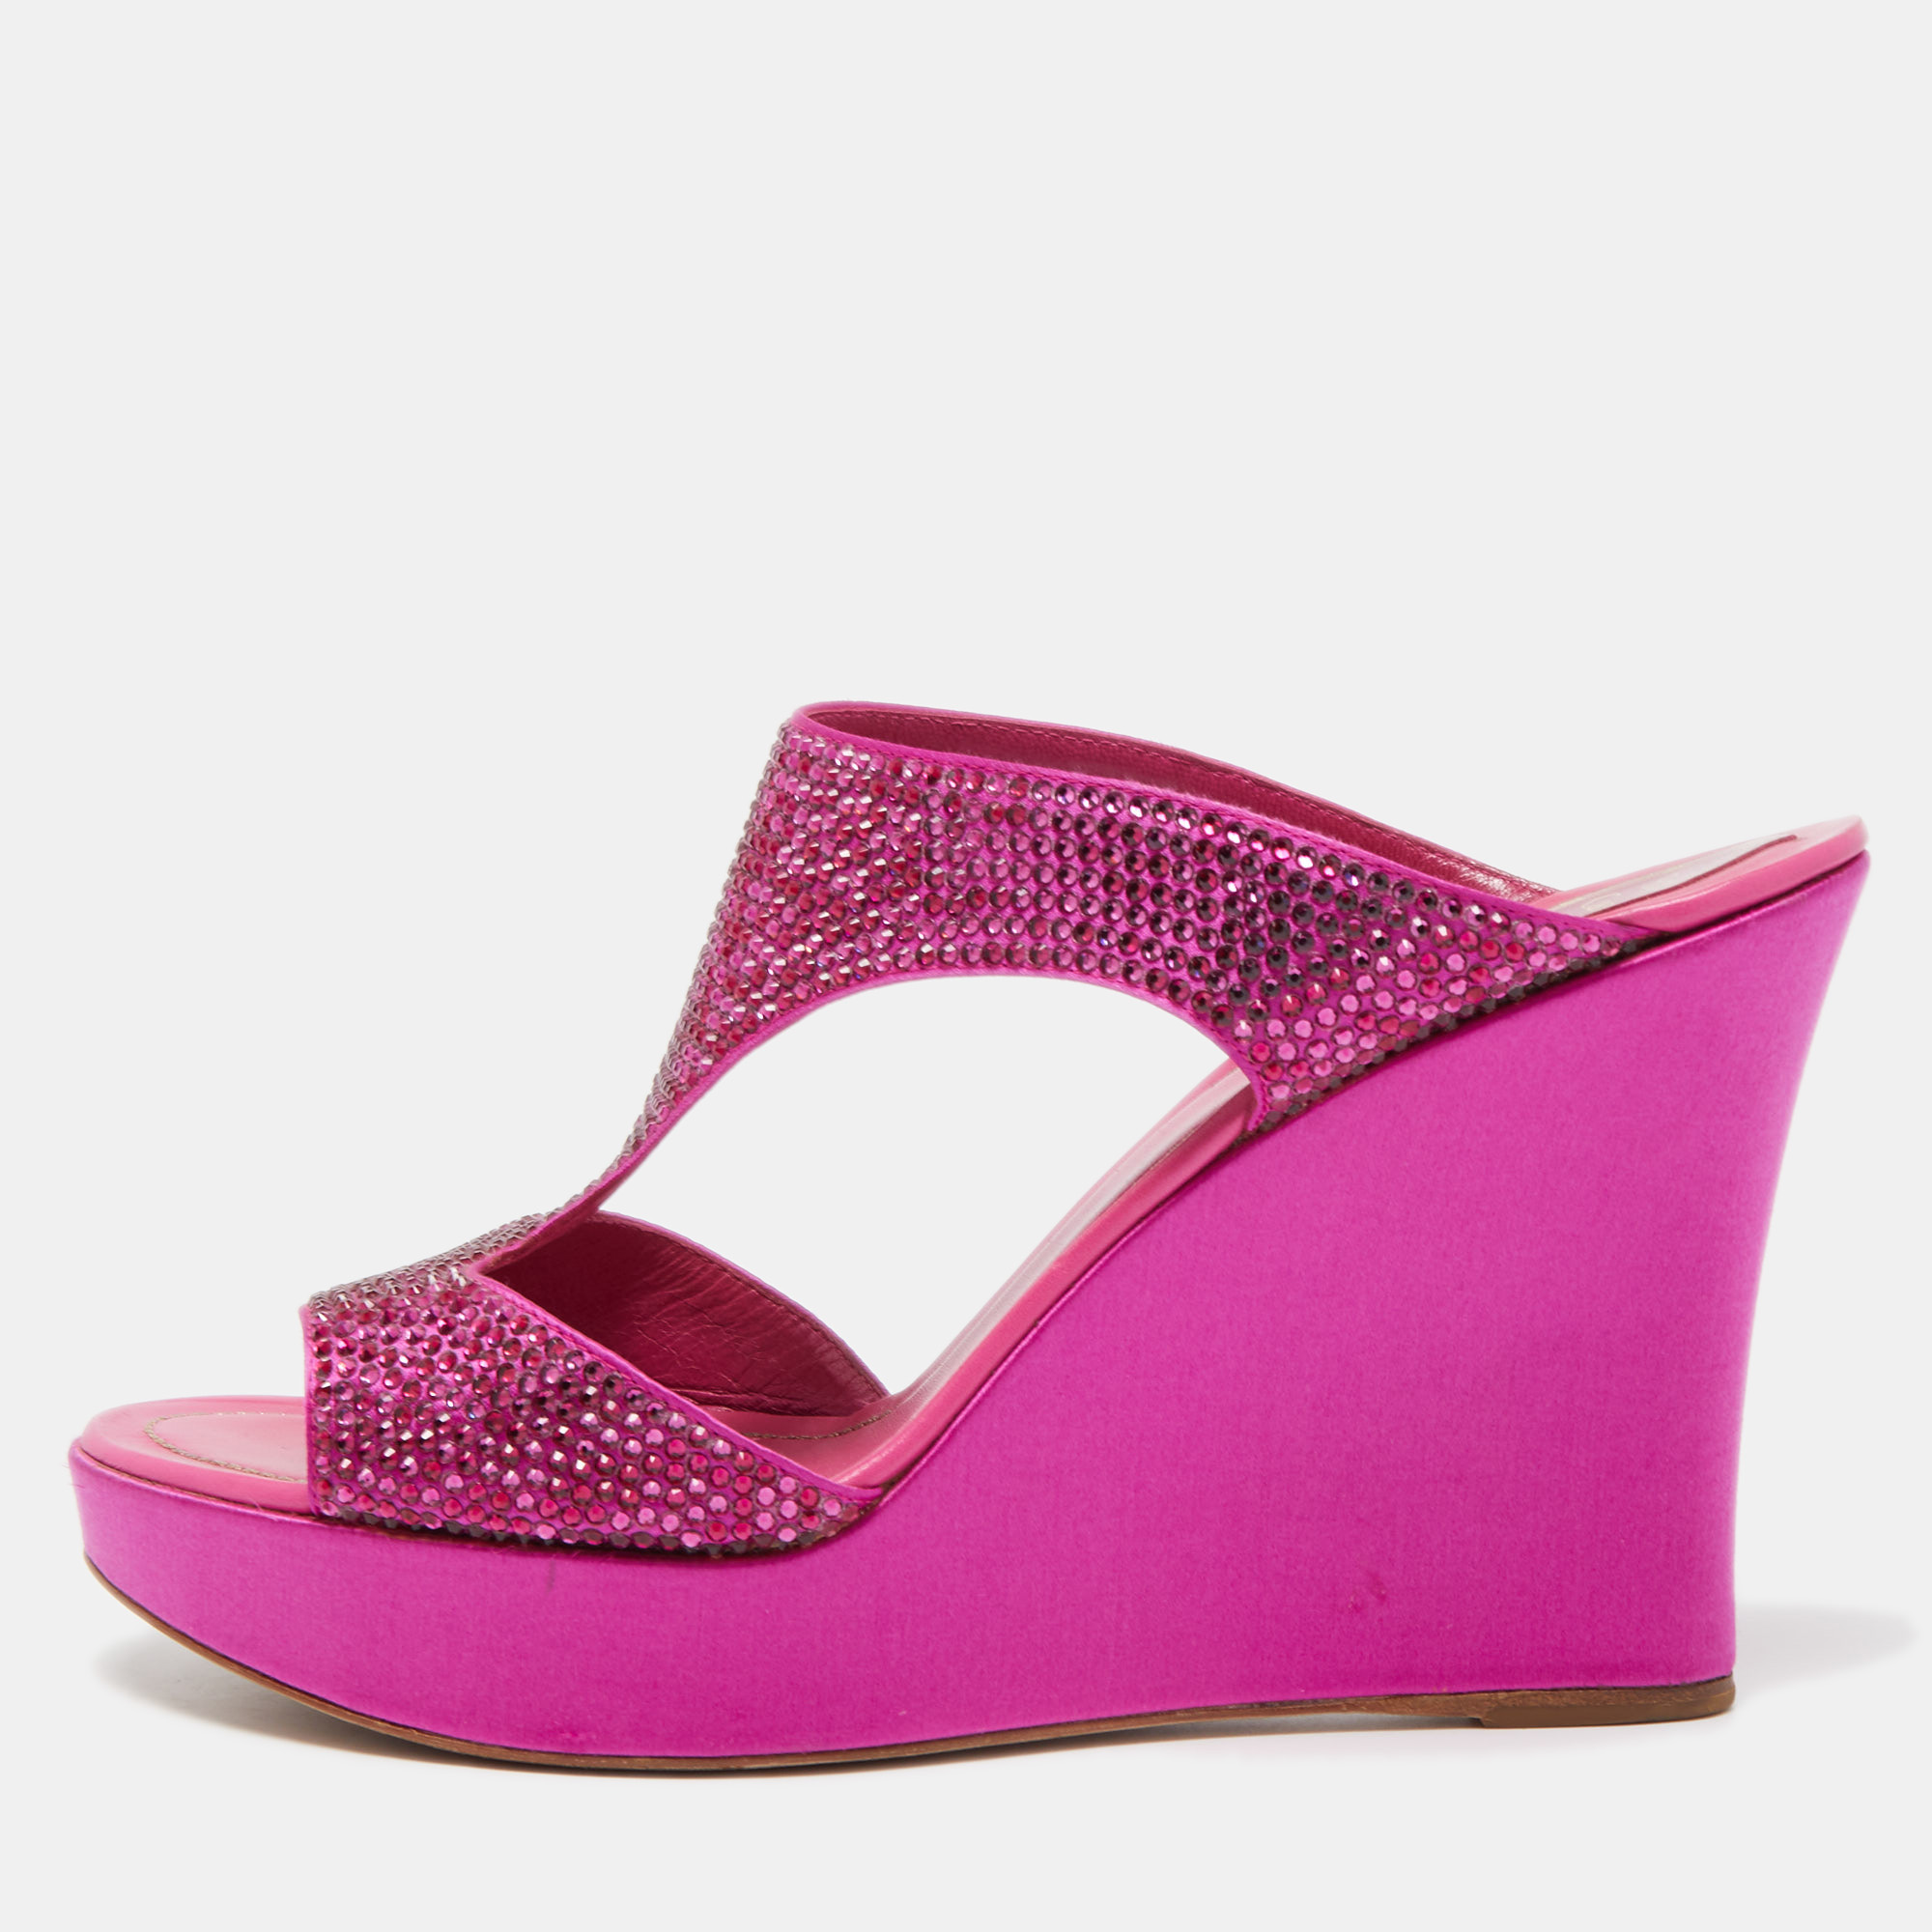 Pre-owned René Caovilla Pink Satin Crystal Embellished Wedge Slide Sandals Size 41